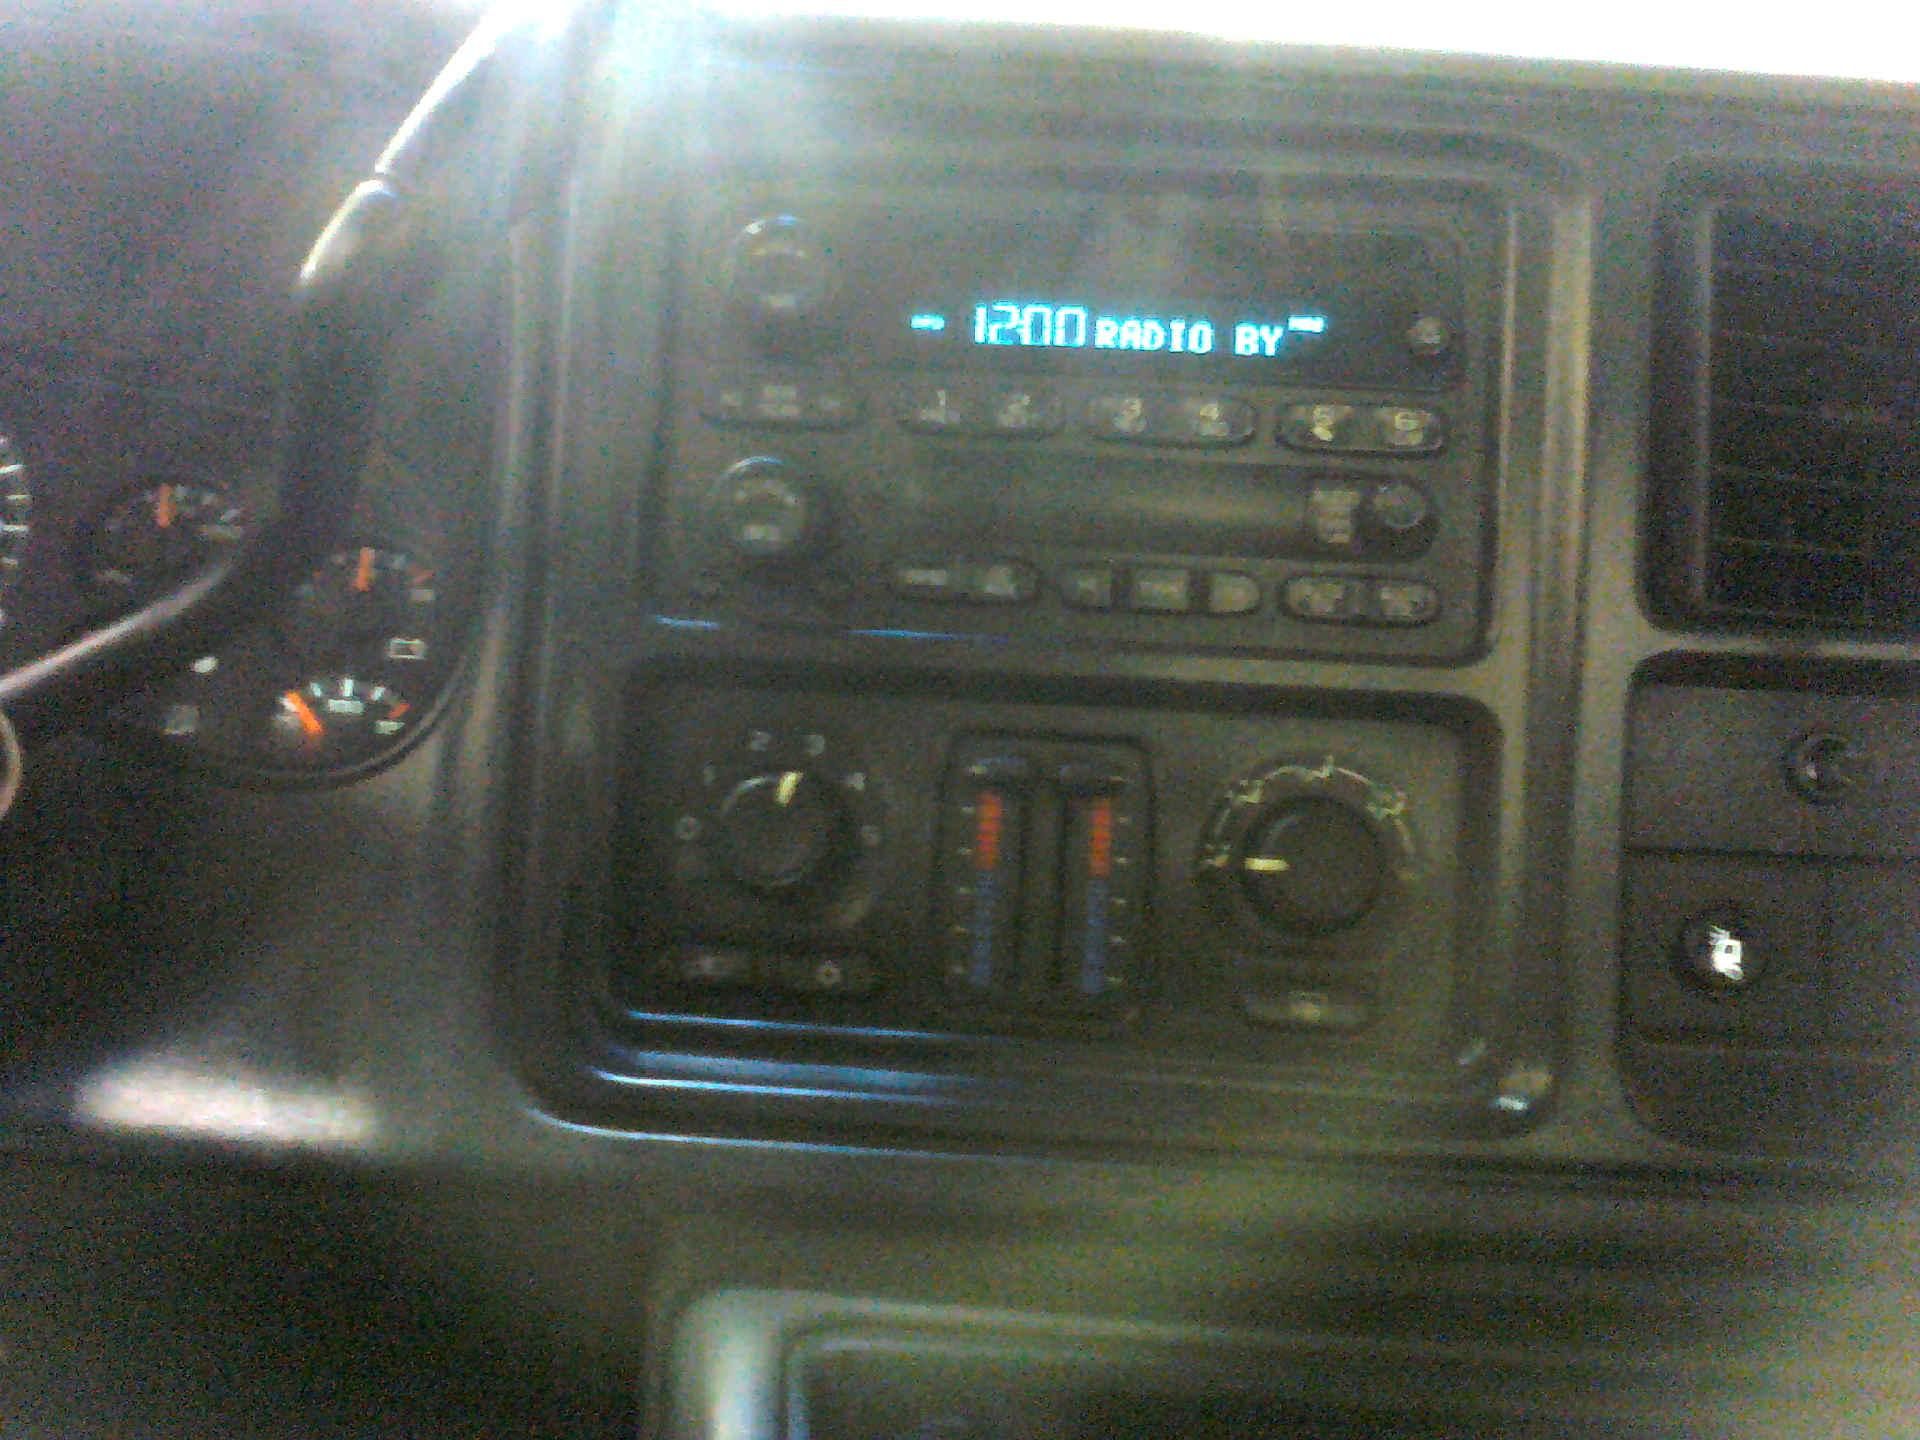 2006 CHEVROLET SILVERADO 2500HD LS CREW CAB 4WD 6.0L V8 OHV 16V AUTOMATIC SN:1GCHK23U46F221940 - Image 8 of 9